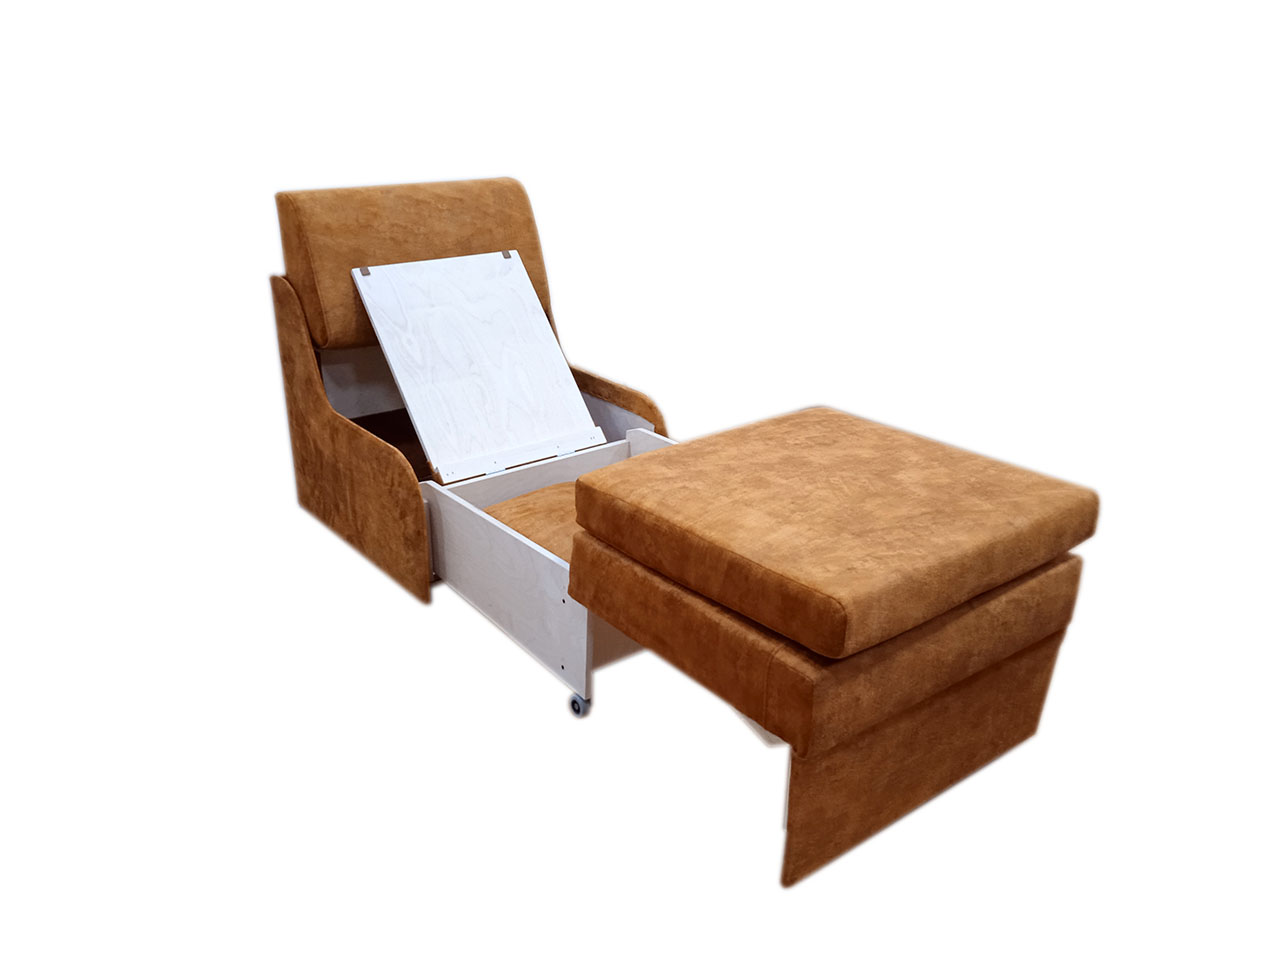 Малогабаритное кресло-кровать Танго-4 Д-70 без боковин и глубиной 75 см. Габаритный размер 75 х 75. Спальное место 70 х 185 или 190 см